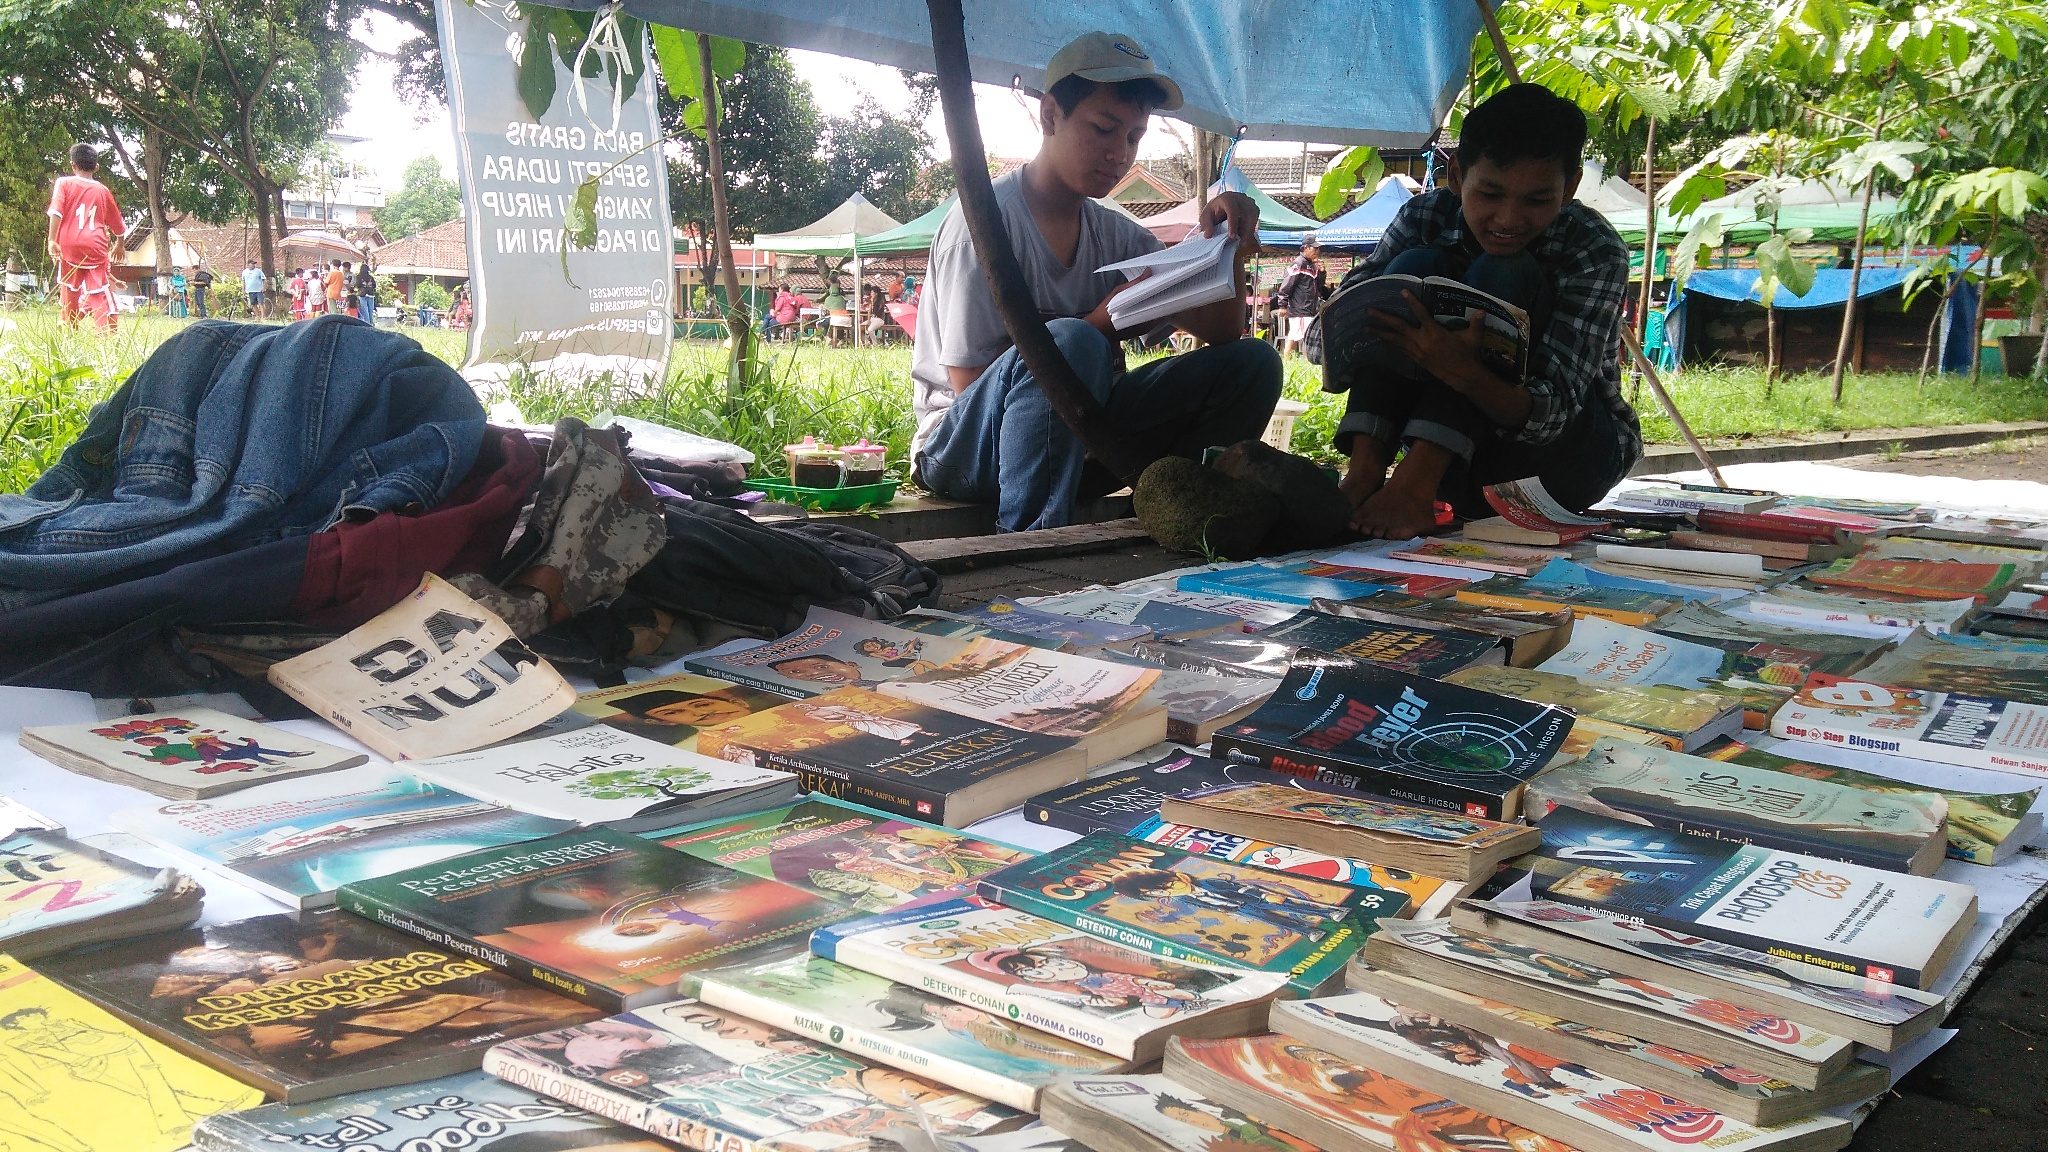 Minat baca rendah, remaja Magelang gagas perpustakaan jalanan